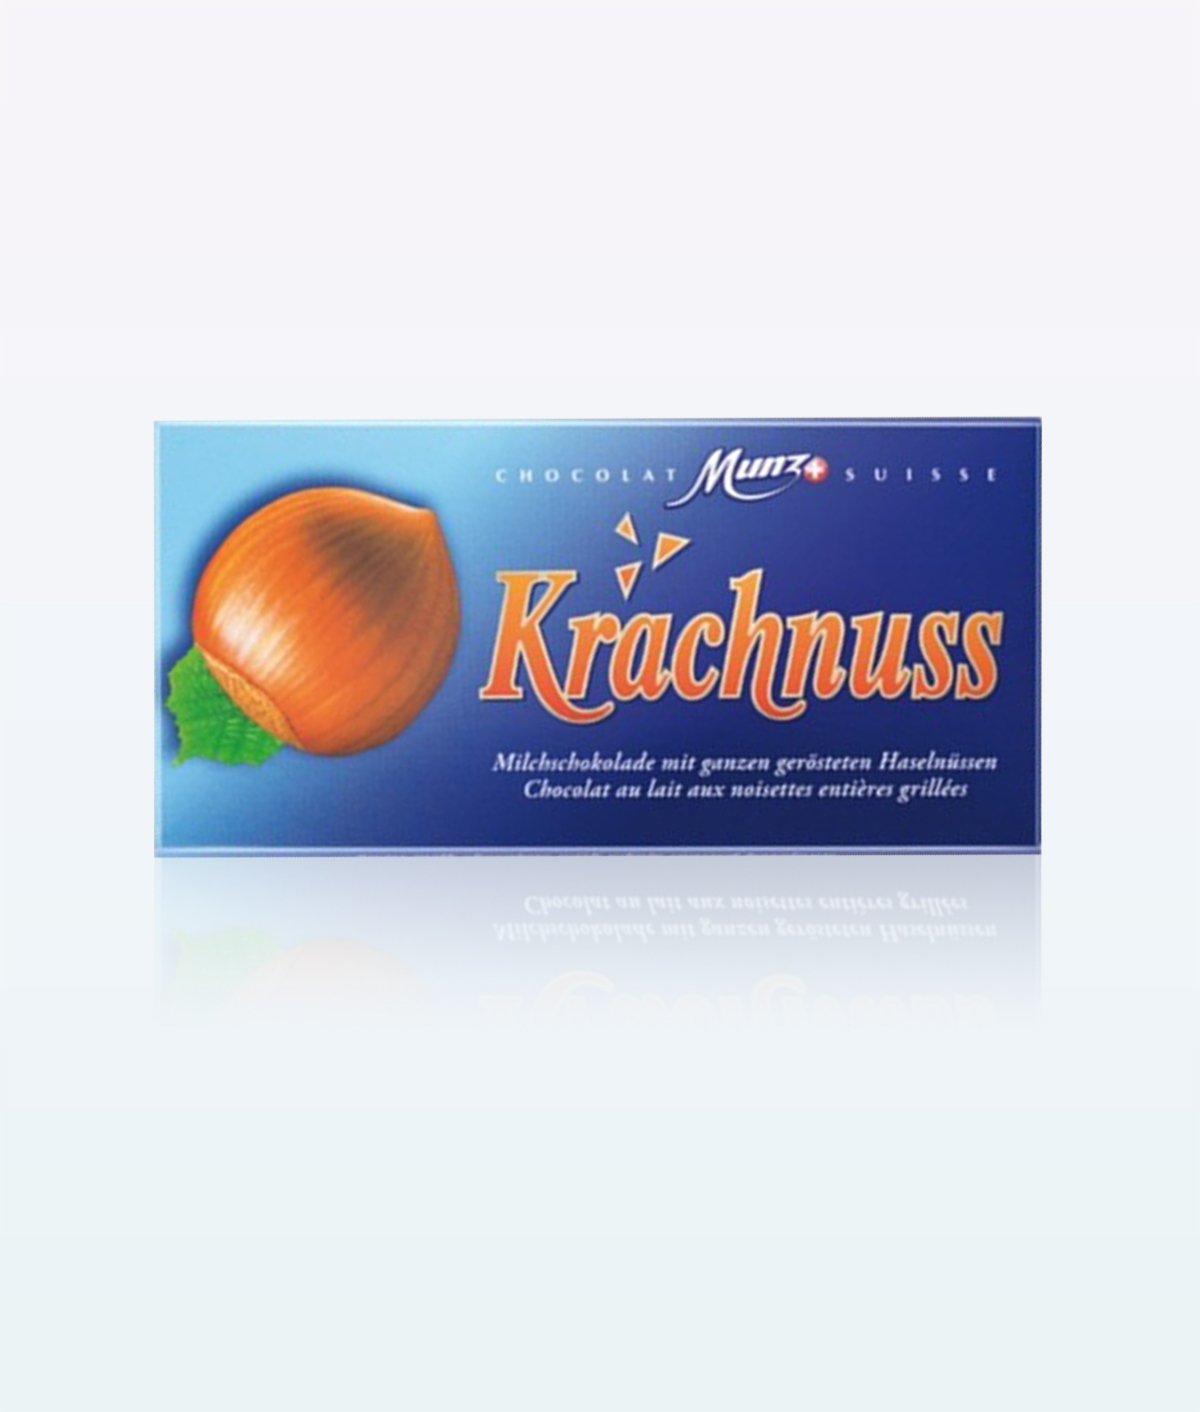 Chocolate Munz Krachnuss